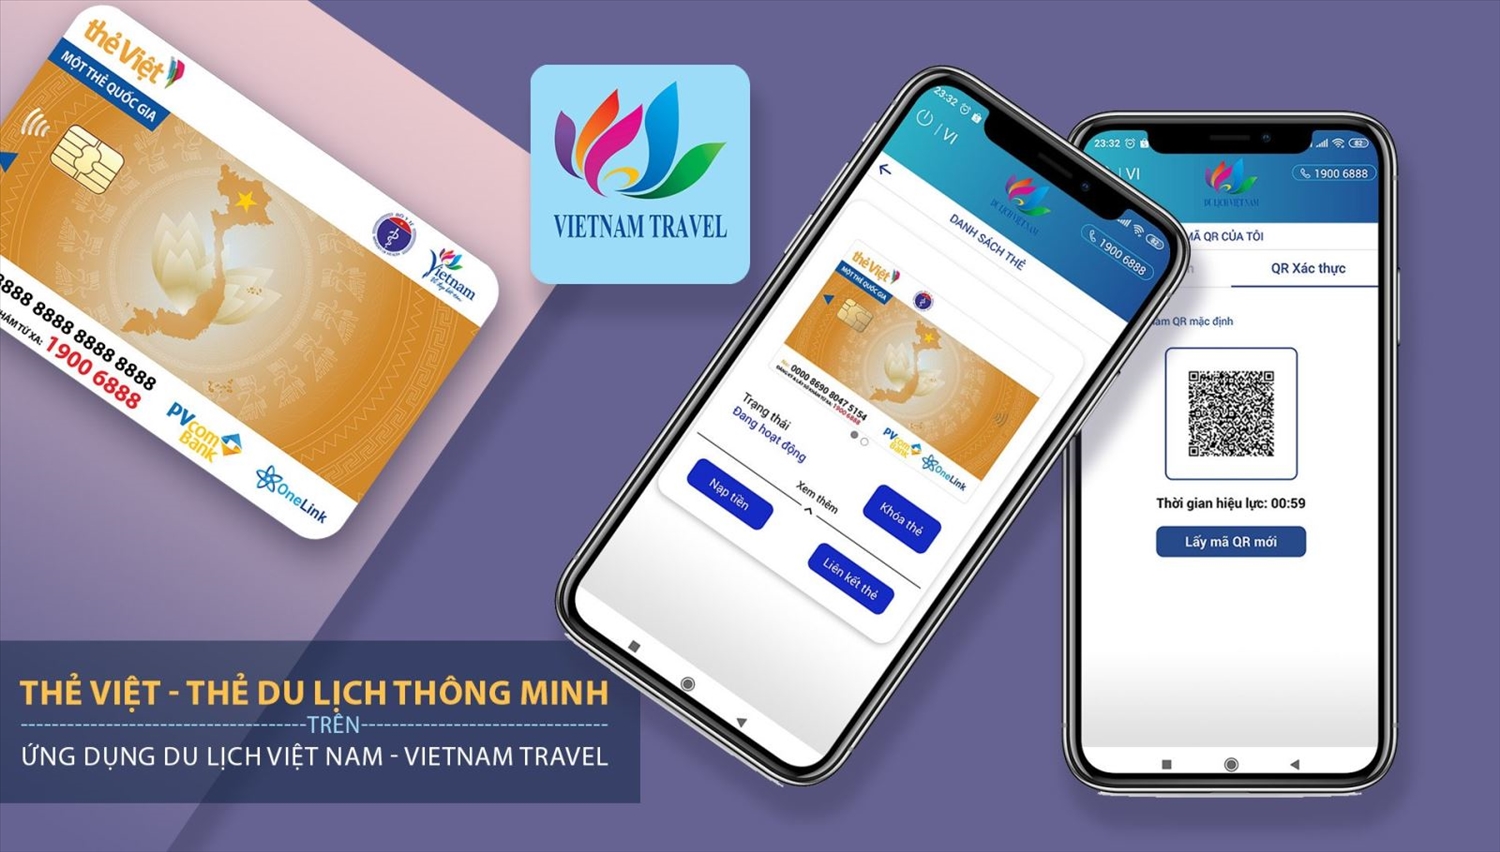 Thẻ Việt - Thẻ du lịch thông minh là một sản phẩm chiến lược trong hệ sinh thái du lịch thông minh